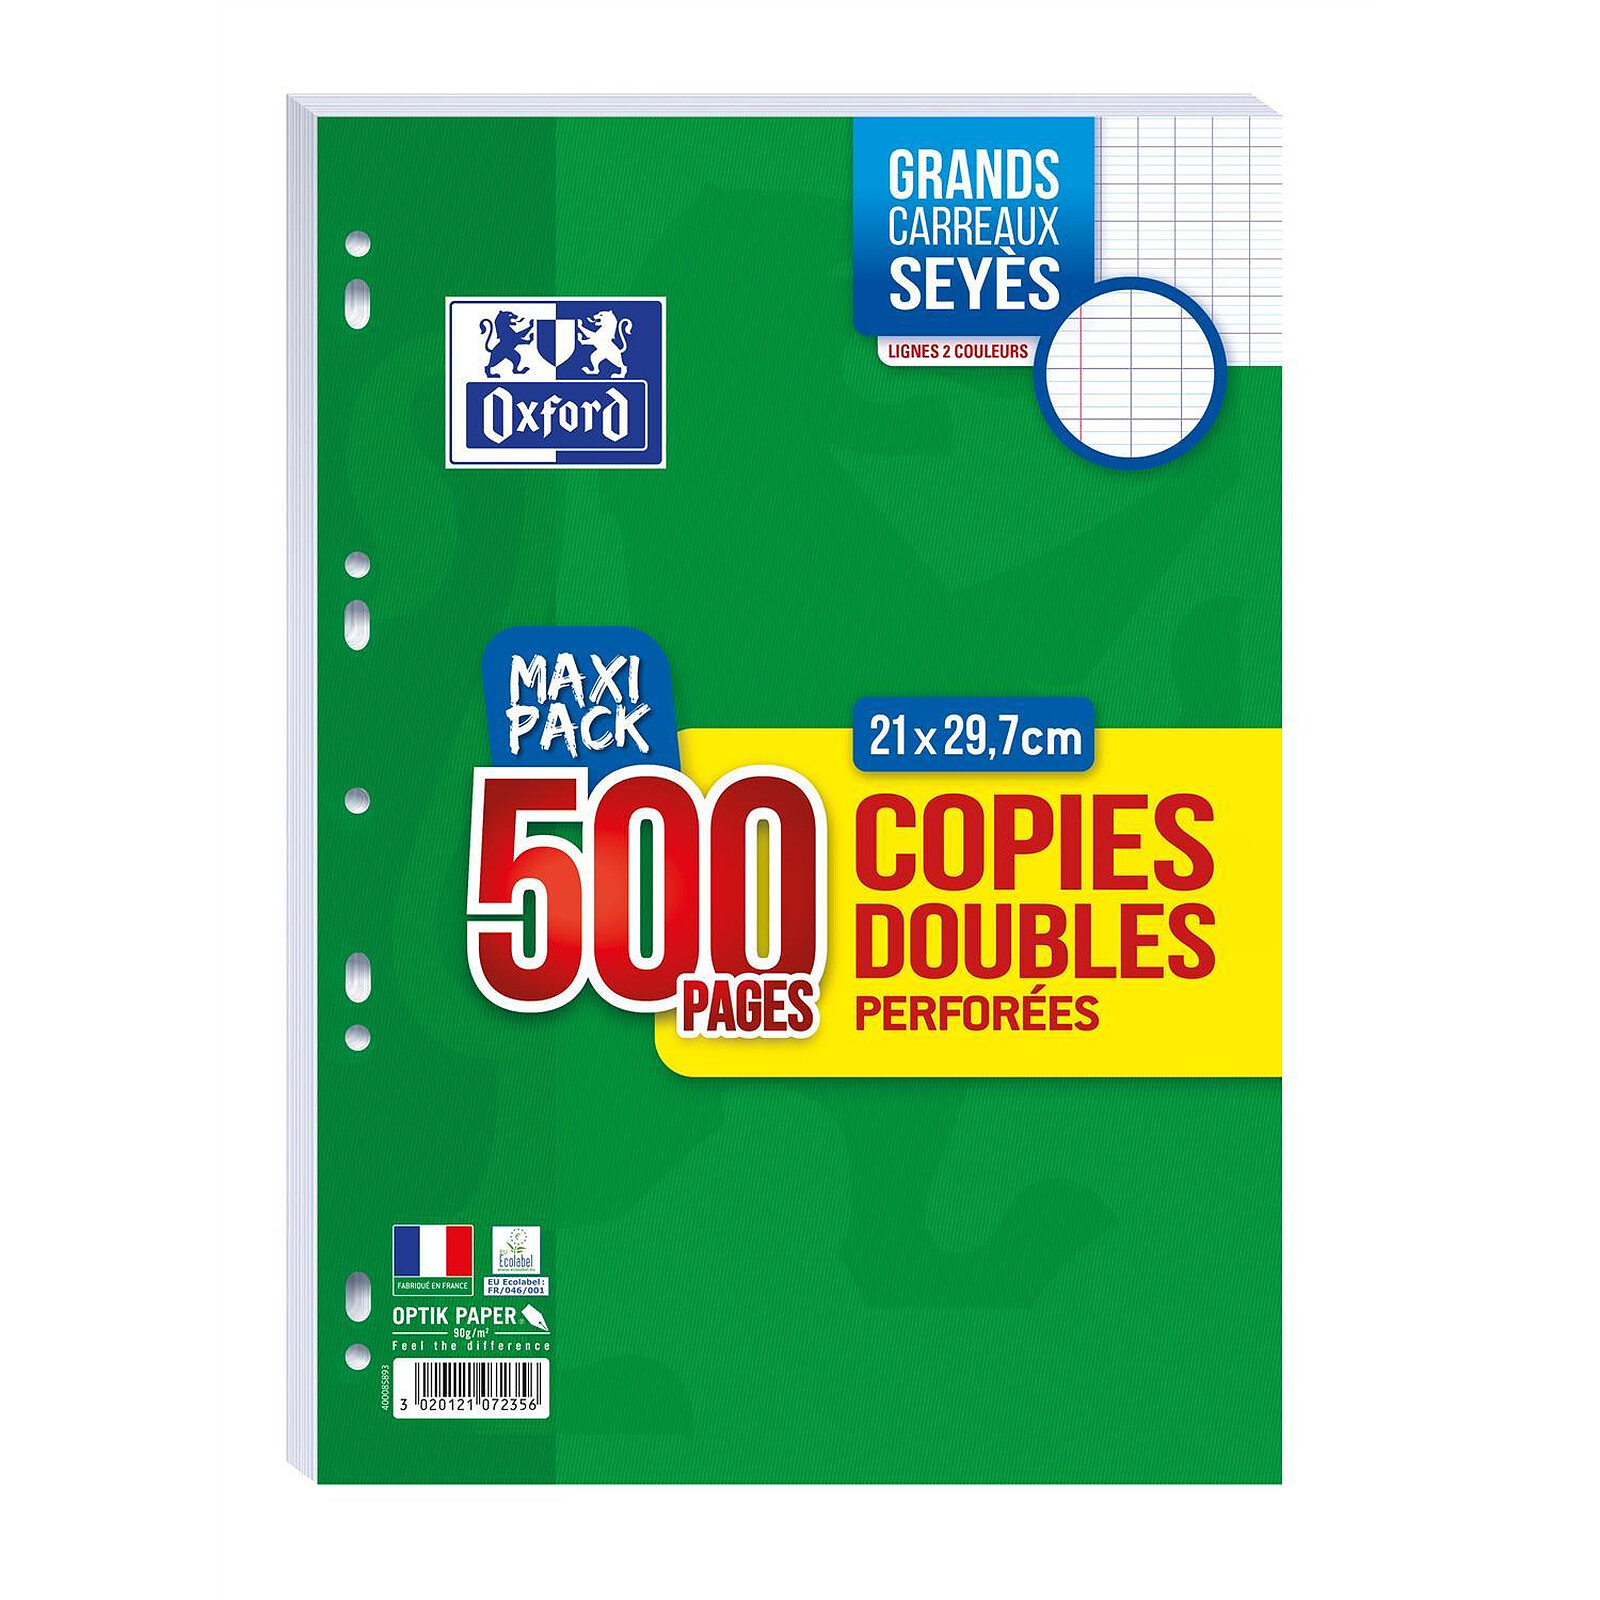 Etui de 500 copies doubles perforées A4 Clairefontaine Grands